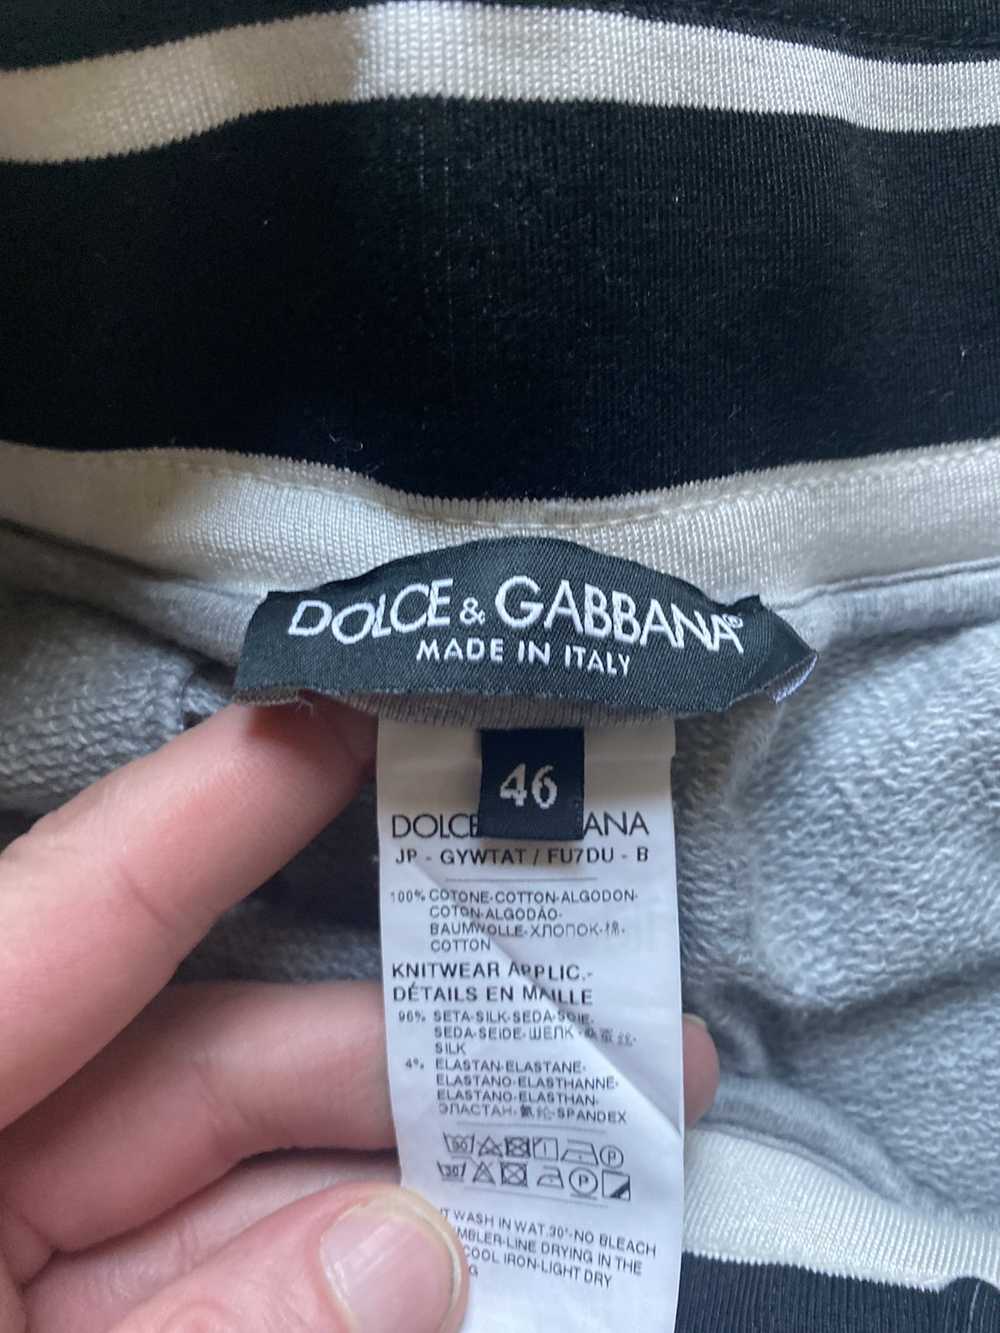 Dolce & Gabbana Dolce and Gabbana casual jogger - image 3